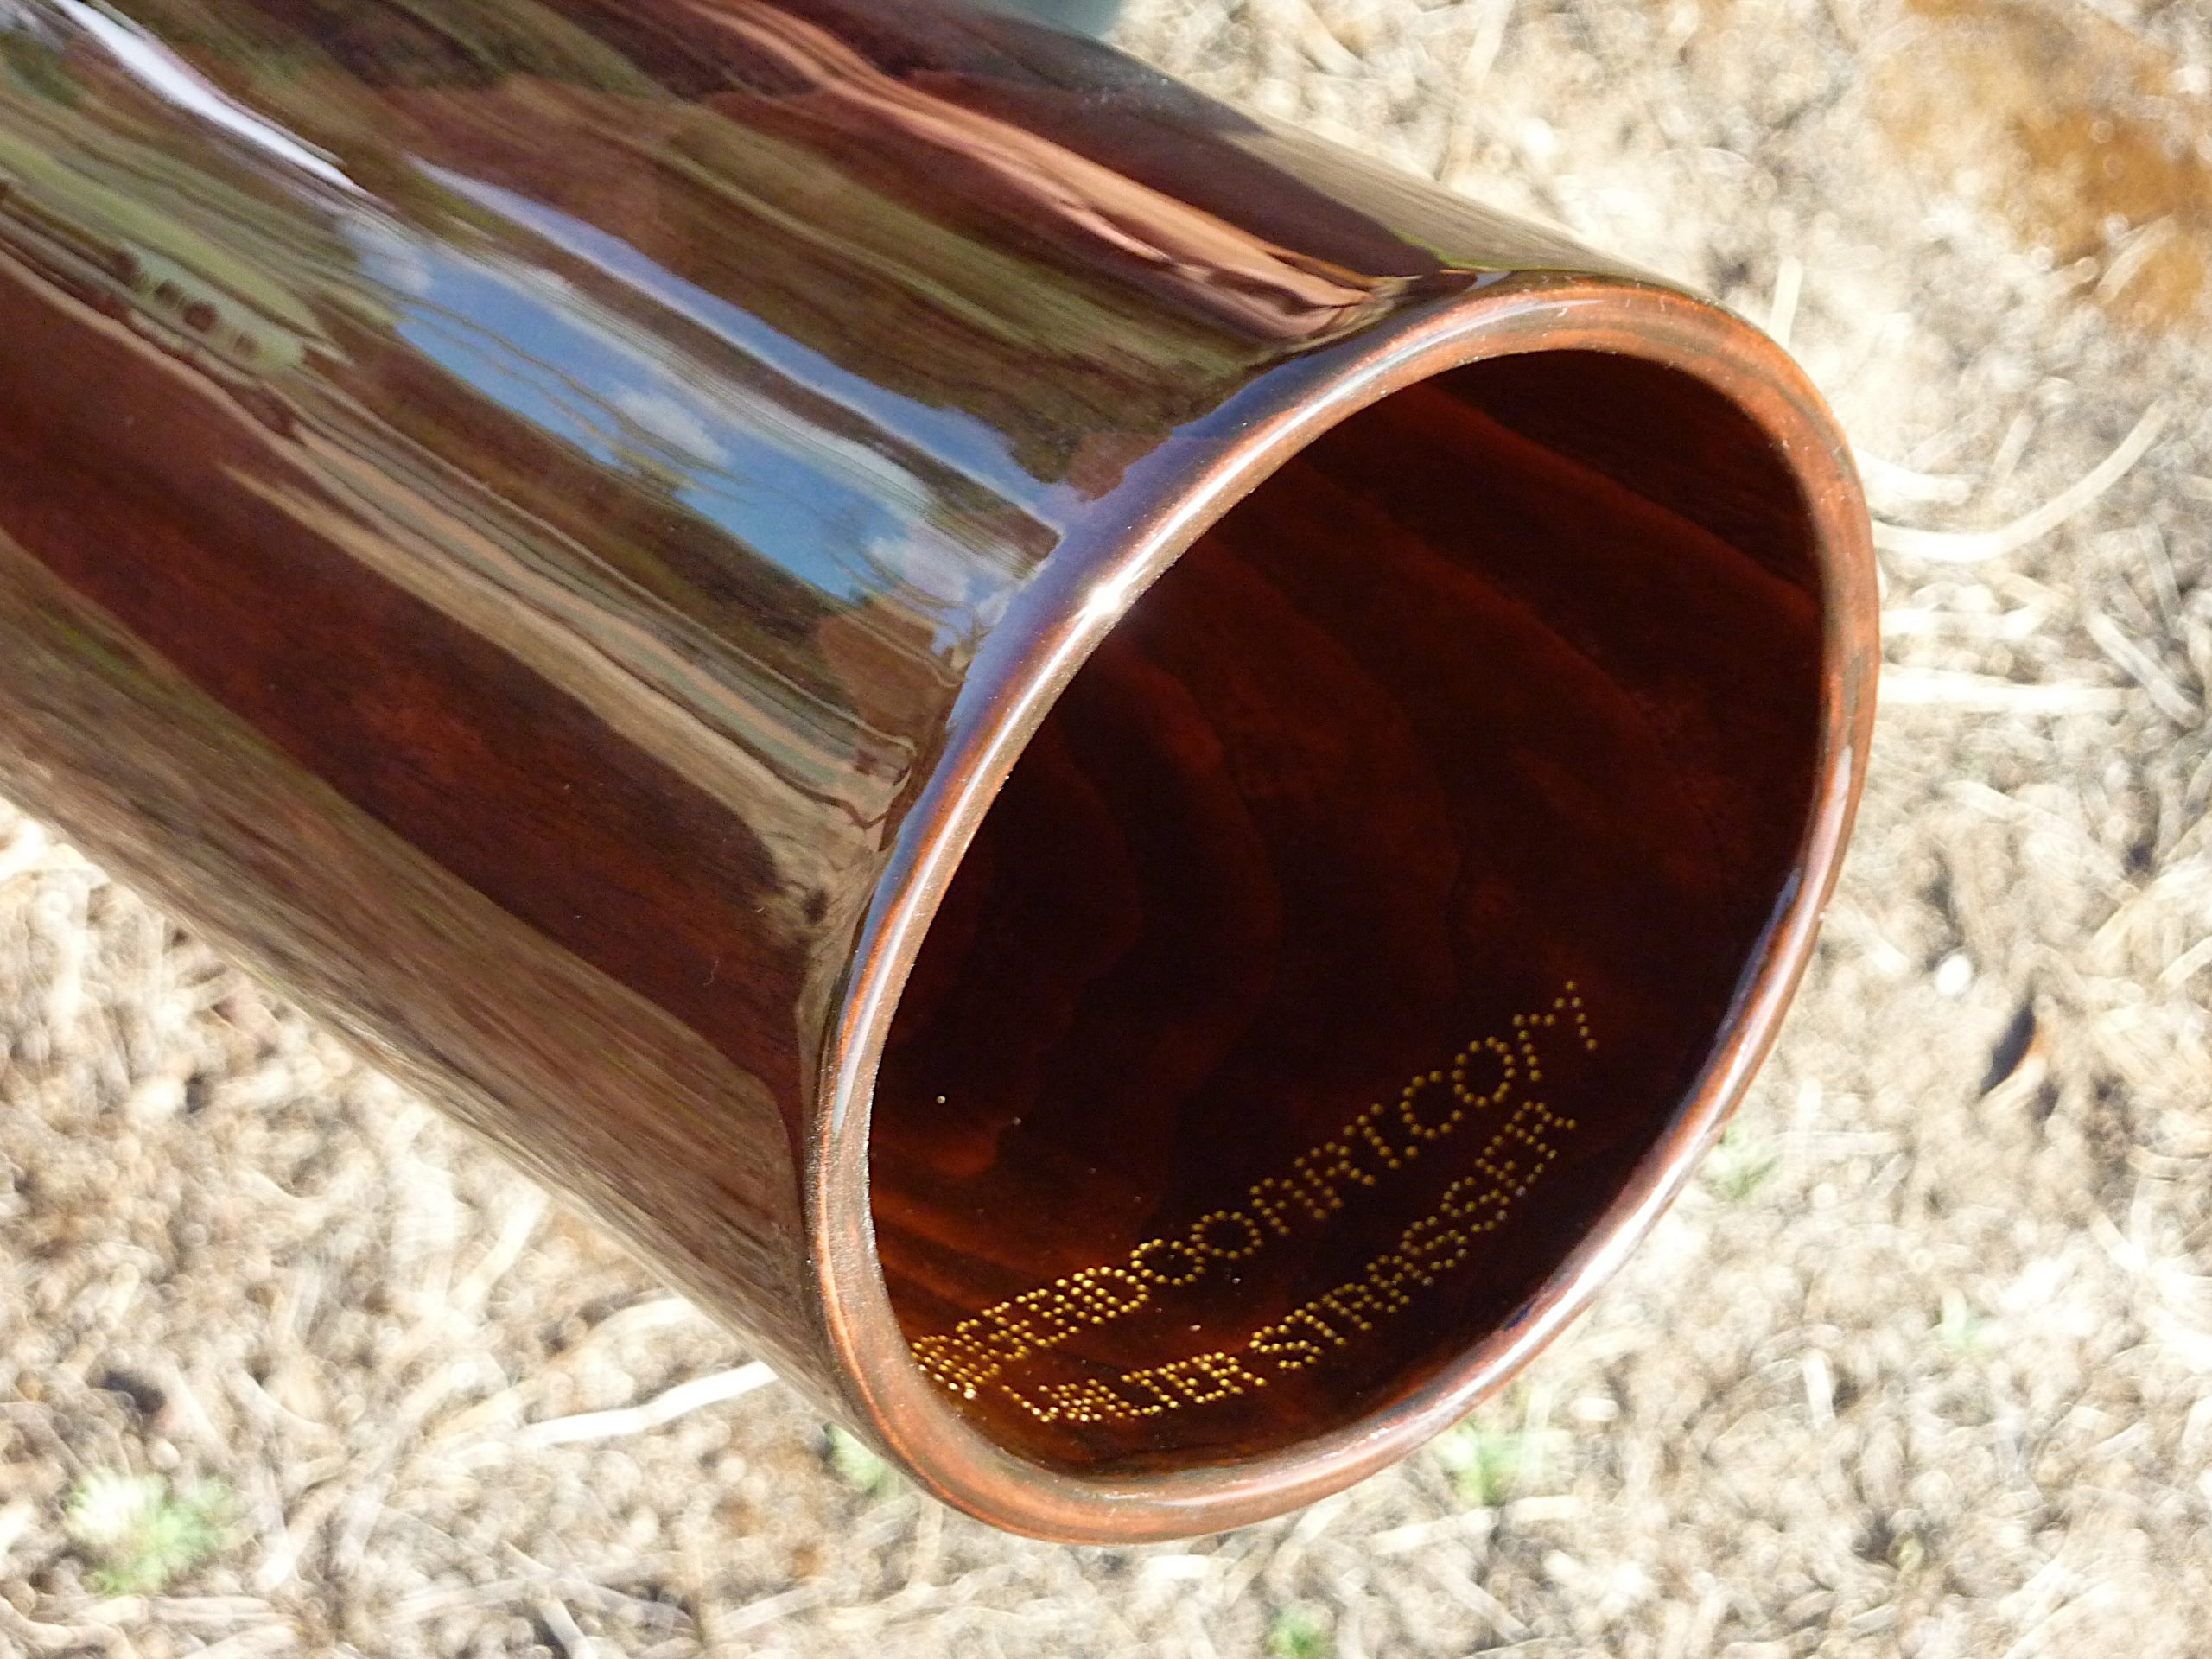 Original Woodslide Didgeridoo, Holz: Esche, Design gebeizt, Ansicht Bellend. Tonlagen: E - C, Bestell-Nr. 103   |   Original Woodslide Didge, Wood: Ash, Design: stained, View: Bellend. Pitches: E -C Order No. 103